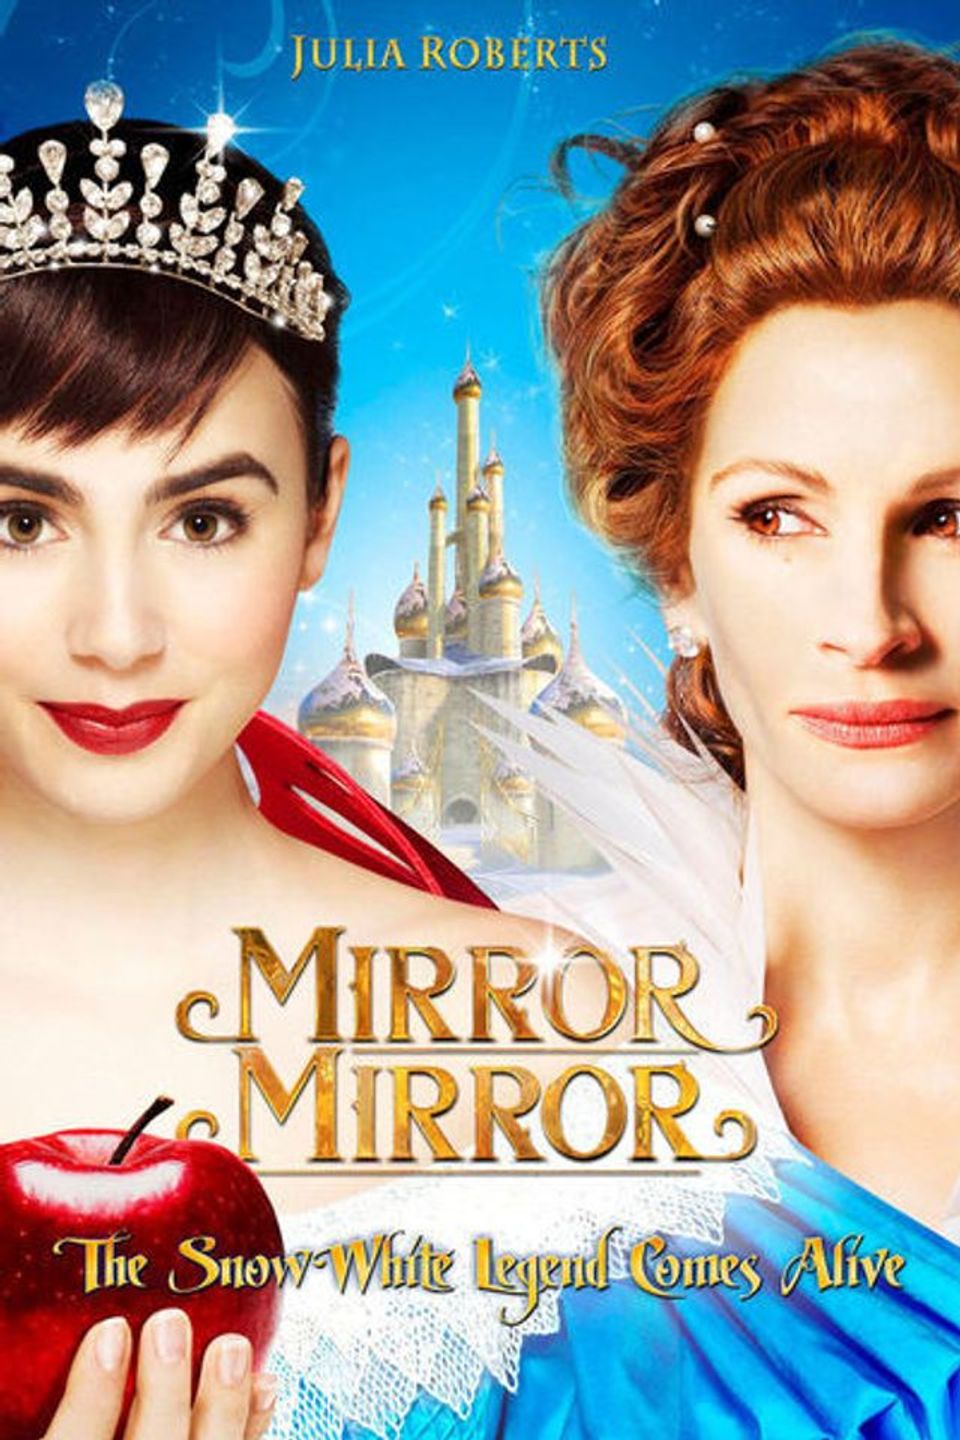 ภาพยนต์ฝรั่ง “จอมโจรสโนไวท์ กับราชินีบานฉ่ำ”  (MIRROR MIRROR)